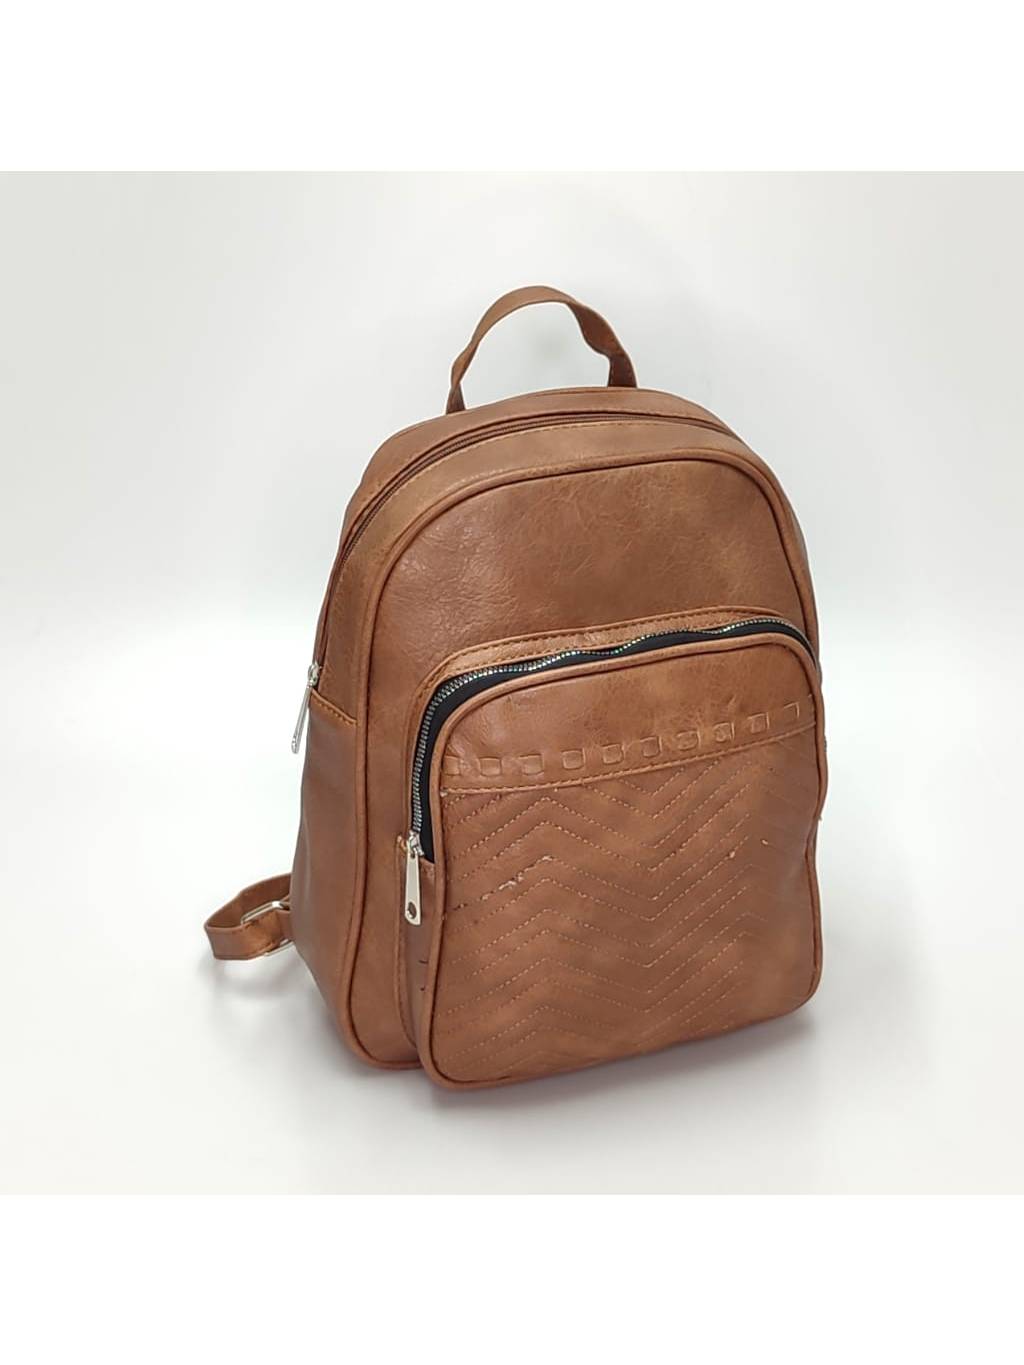 Dámsky ruksak DL0113 tmavo béžový www.kabelky vypredaj (3)